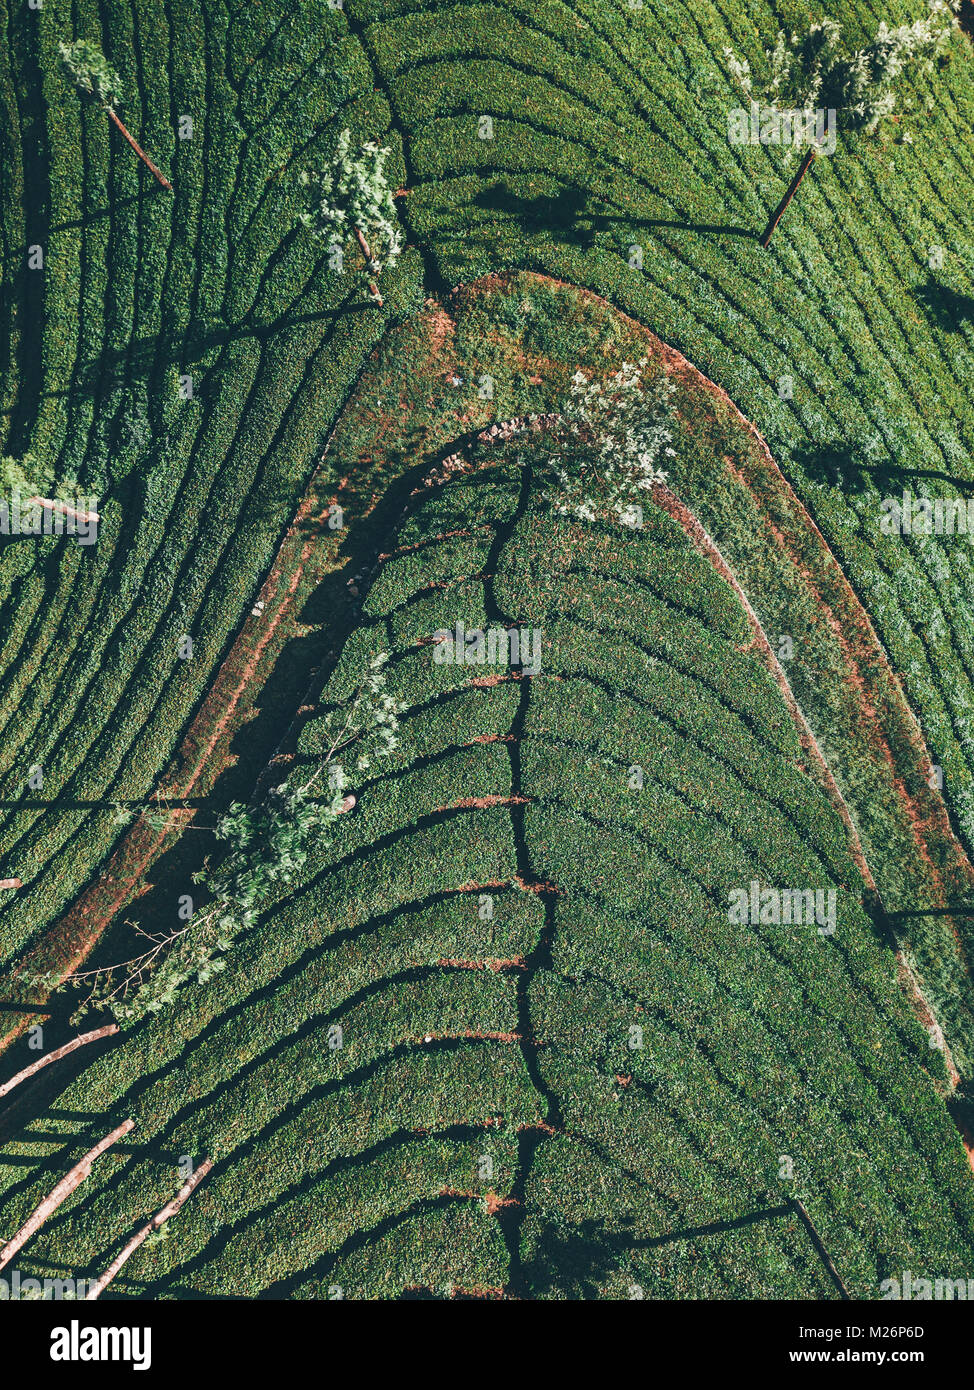 Teeplantage Fairtrade anbau, Bio Gesund aus der Natur Tee Foto Stock